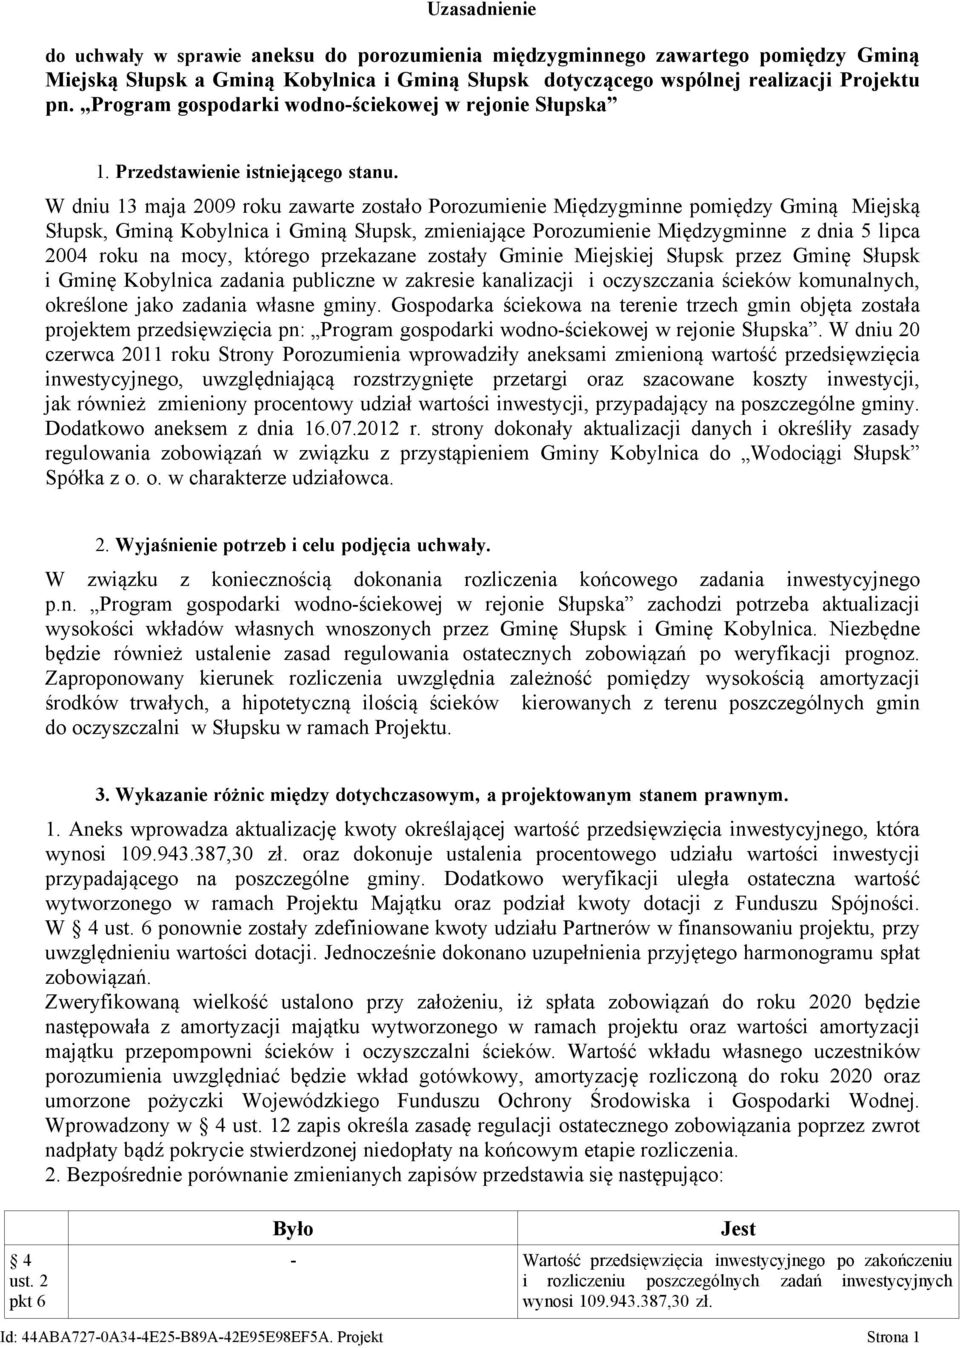 W dniu 13 maja 2009 roku zawarte zostało Porozumienie Międzygminne pomiędzy Gminą Miejską Słupsk, Gminą Kobylnica i Gminą Słupsk, zmieniające Porozumienie Międzygminne z dnia 5 lipca 2004 roku na